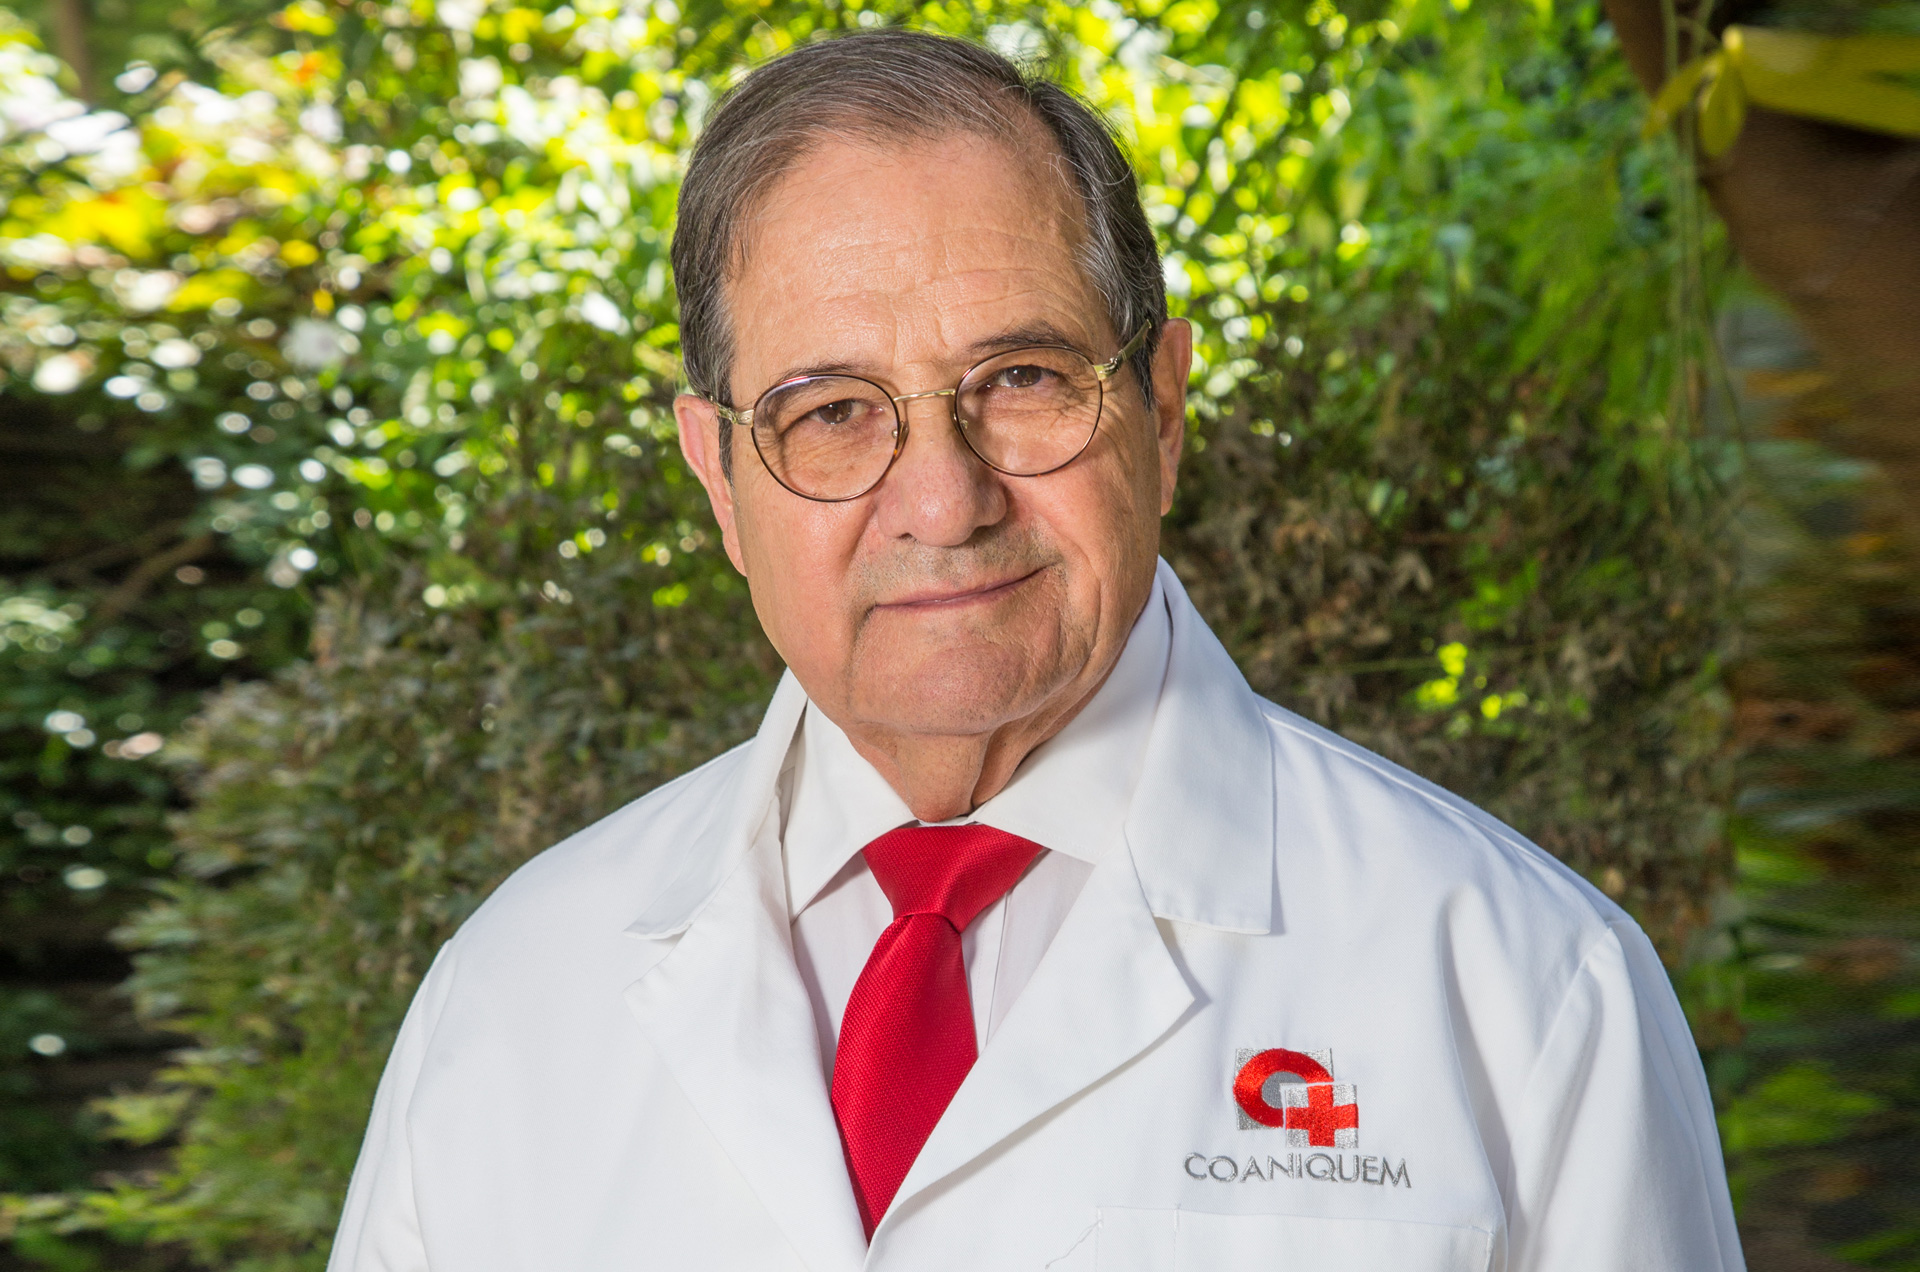 Dr. Jorge Rojas